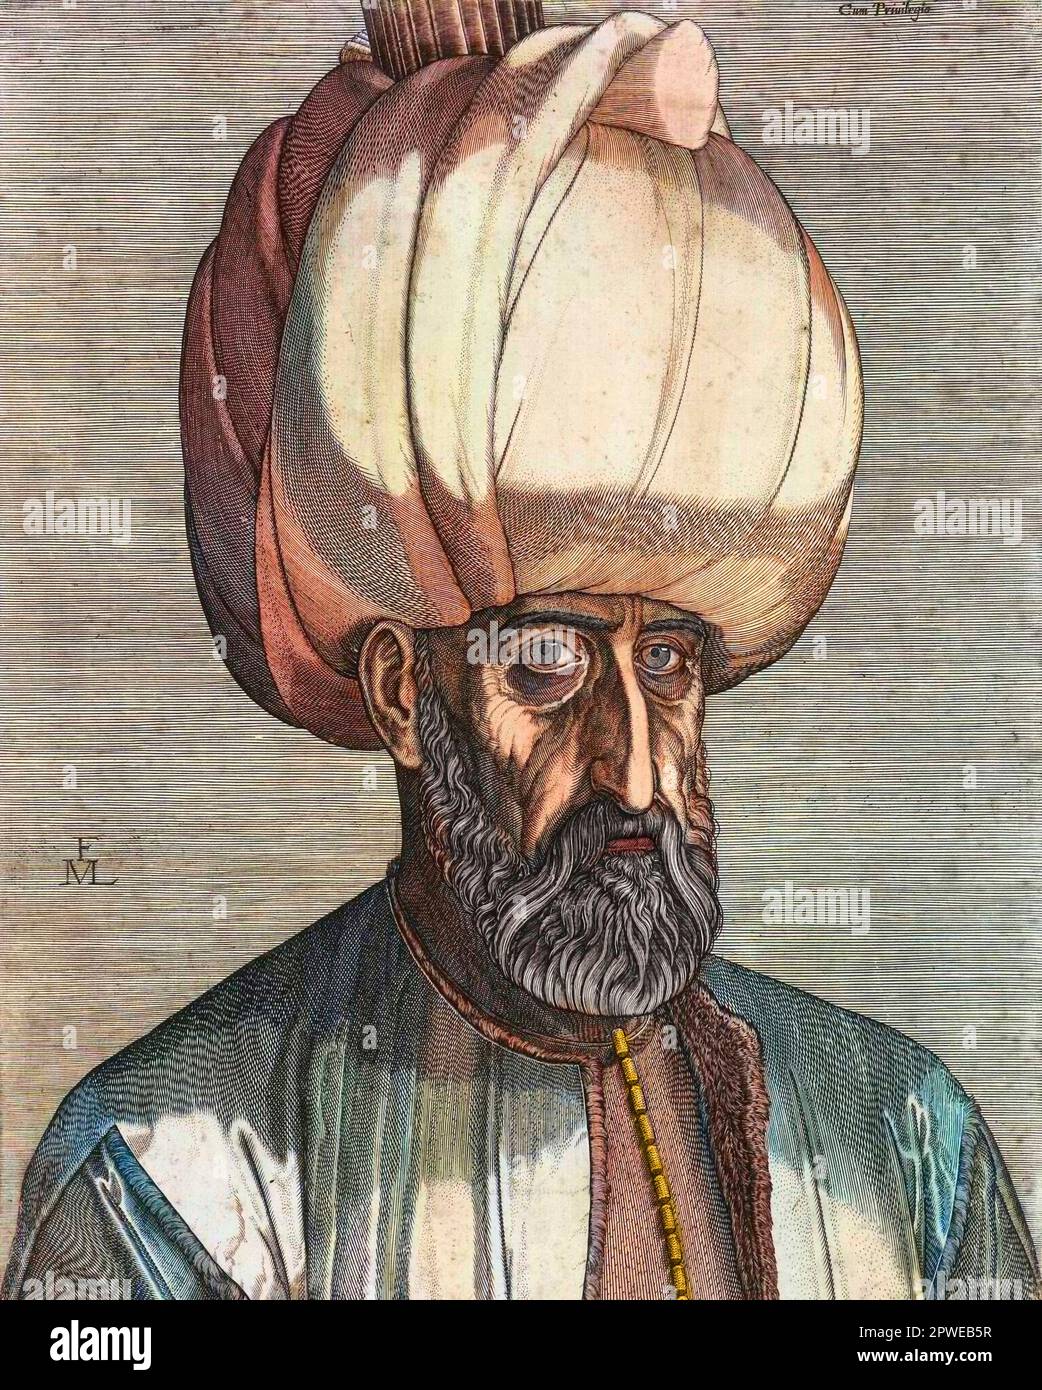 Portrait of Sultan Suleiman the Great. - Portrait de Soliman I le Magnifique (1494-1566) (ou le Legislateur), sultan de l'empire ottoman -  Suleiman I, 'The Magnificent,' sultan of the Ottoman Empire - Stock Photo